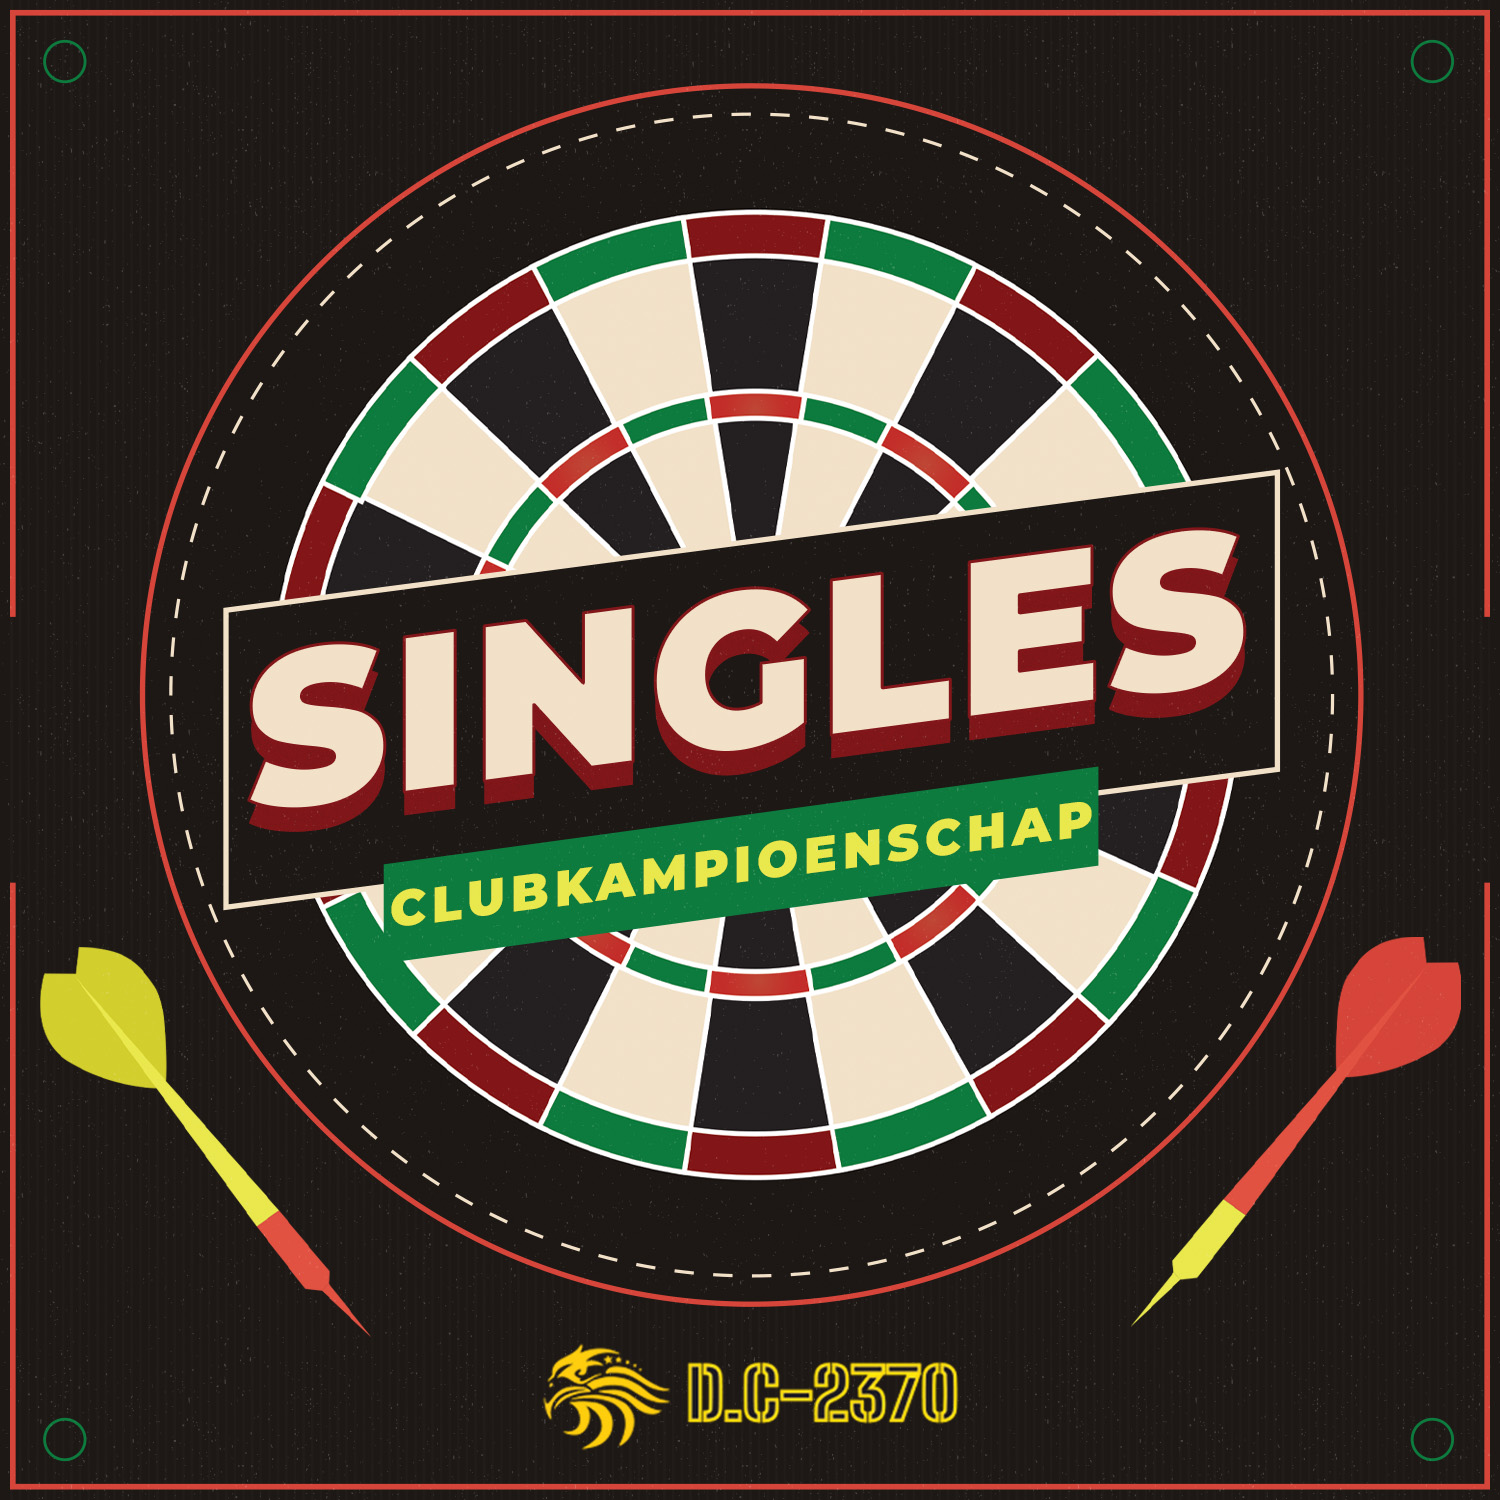 D.C-2370: Clubkampioenschap Singles